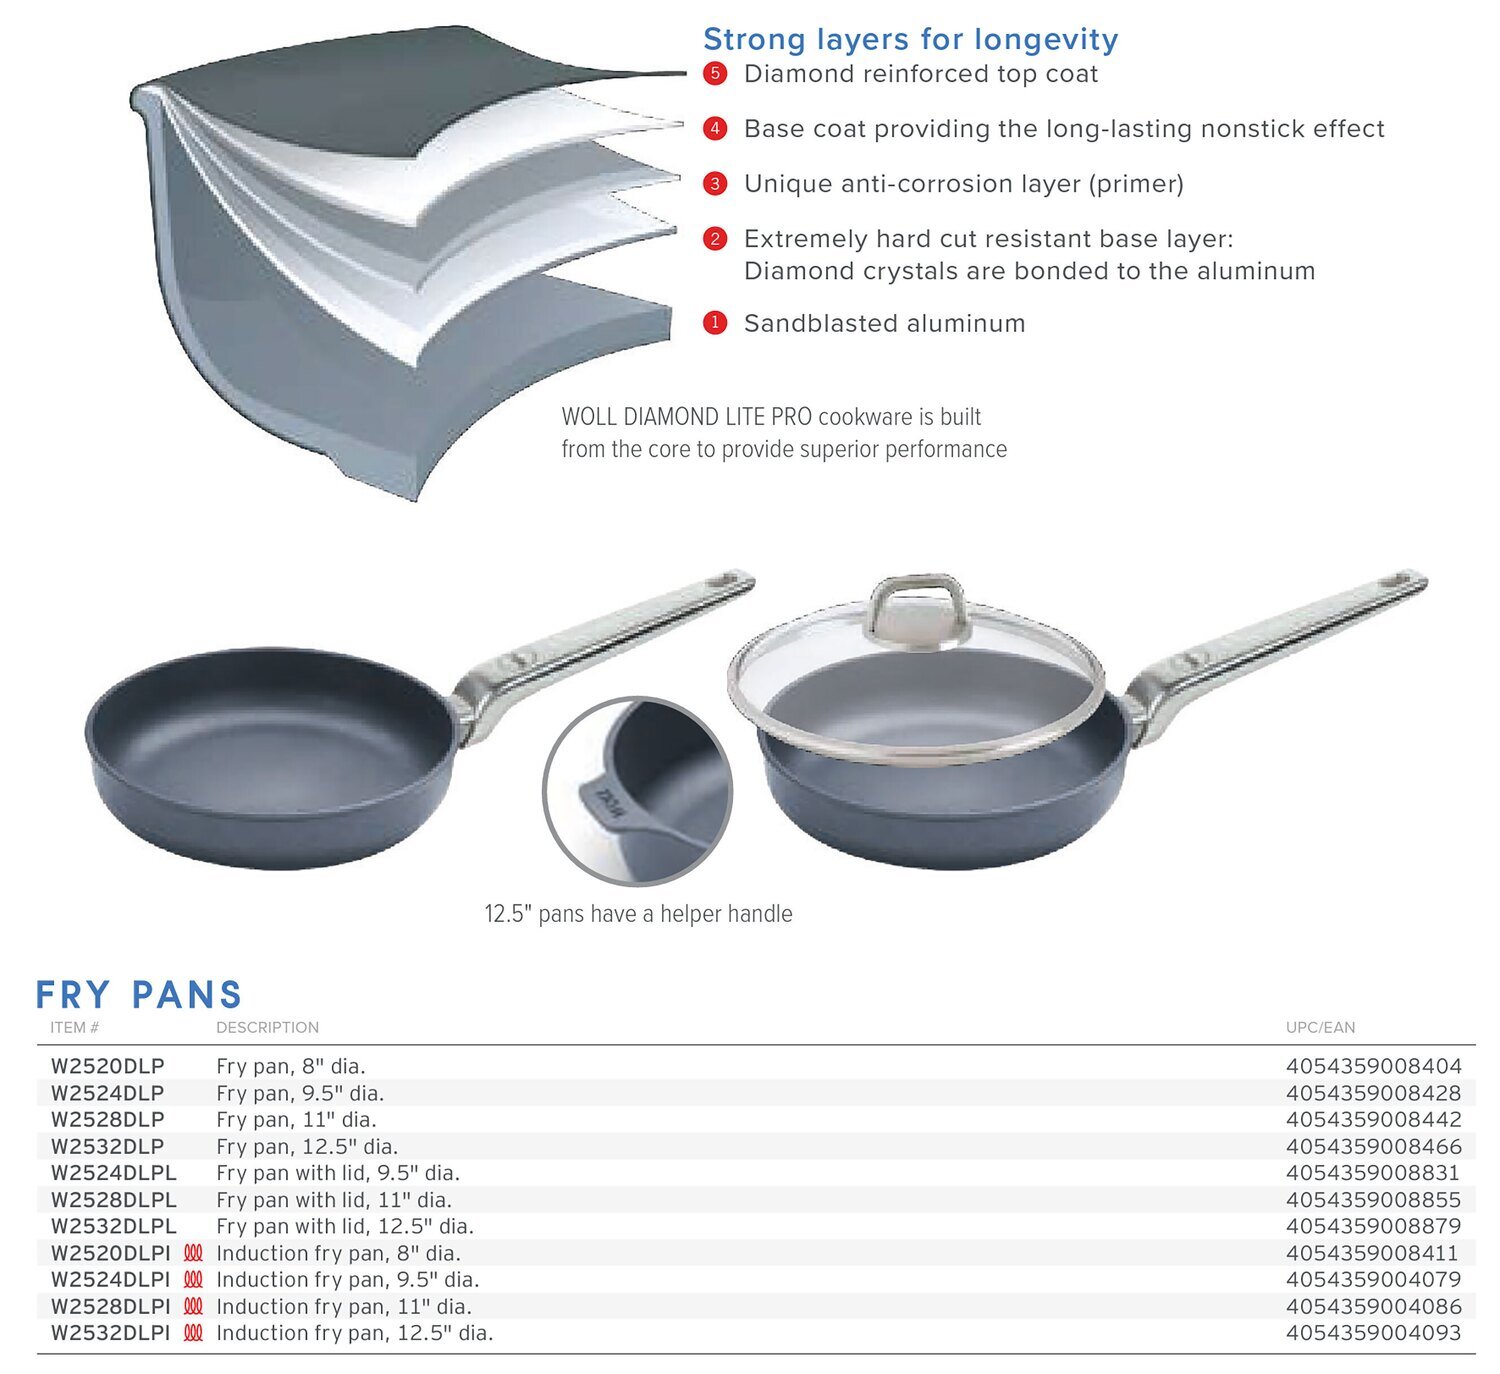 Frieling Diamond Lite Pro Fry Pan with Lid 11" W2528DLPL